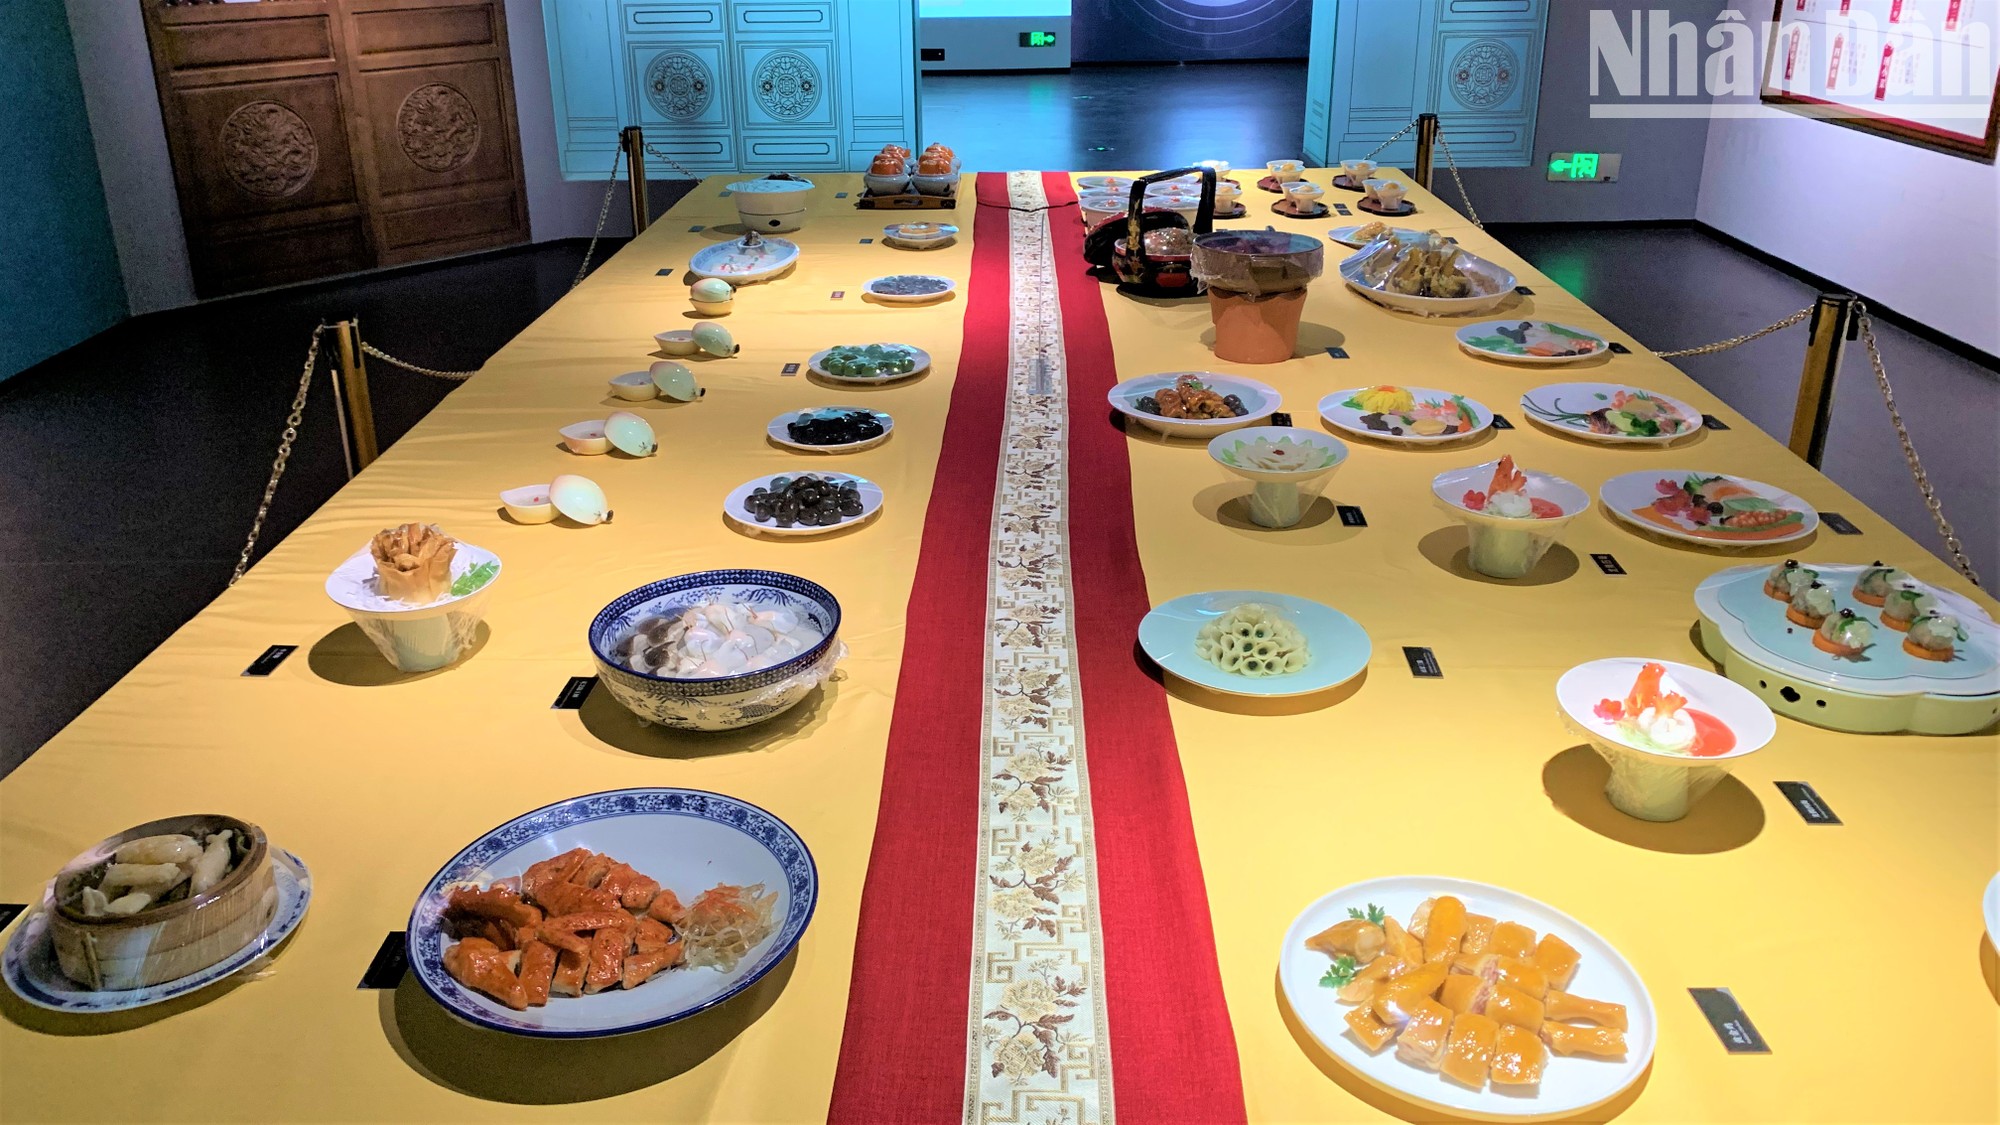 Khám phá ẩm thực Trung Hoa qua một bảo tàng - Ảnh 2.